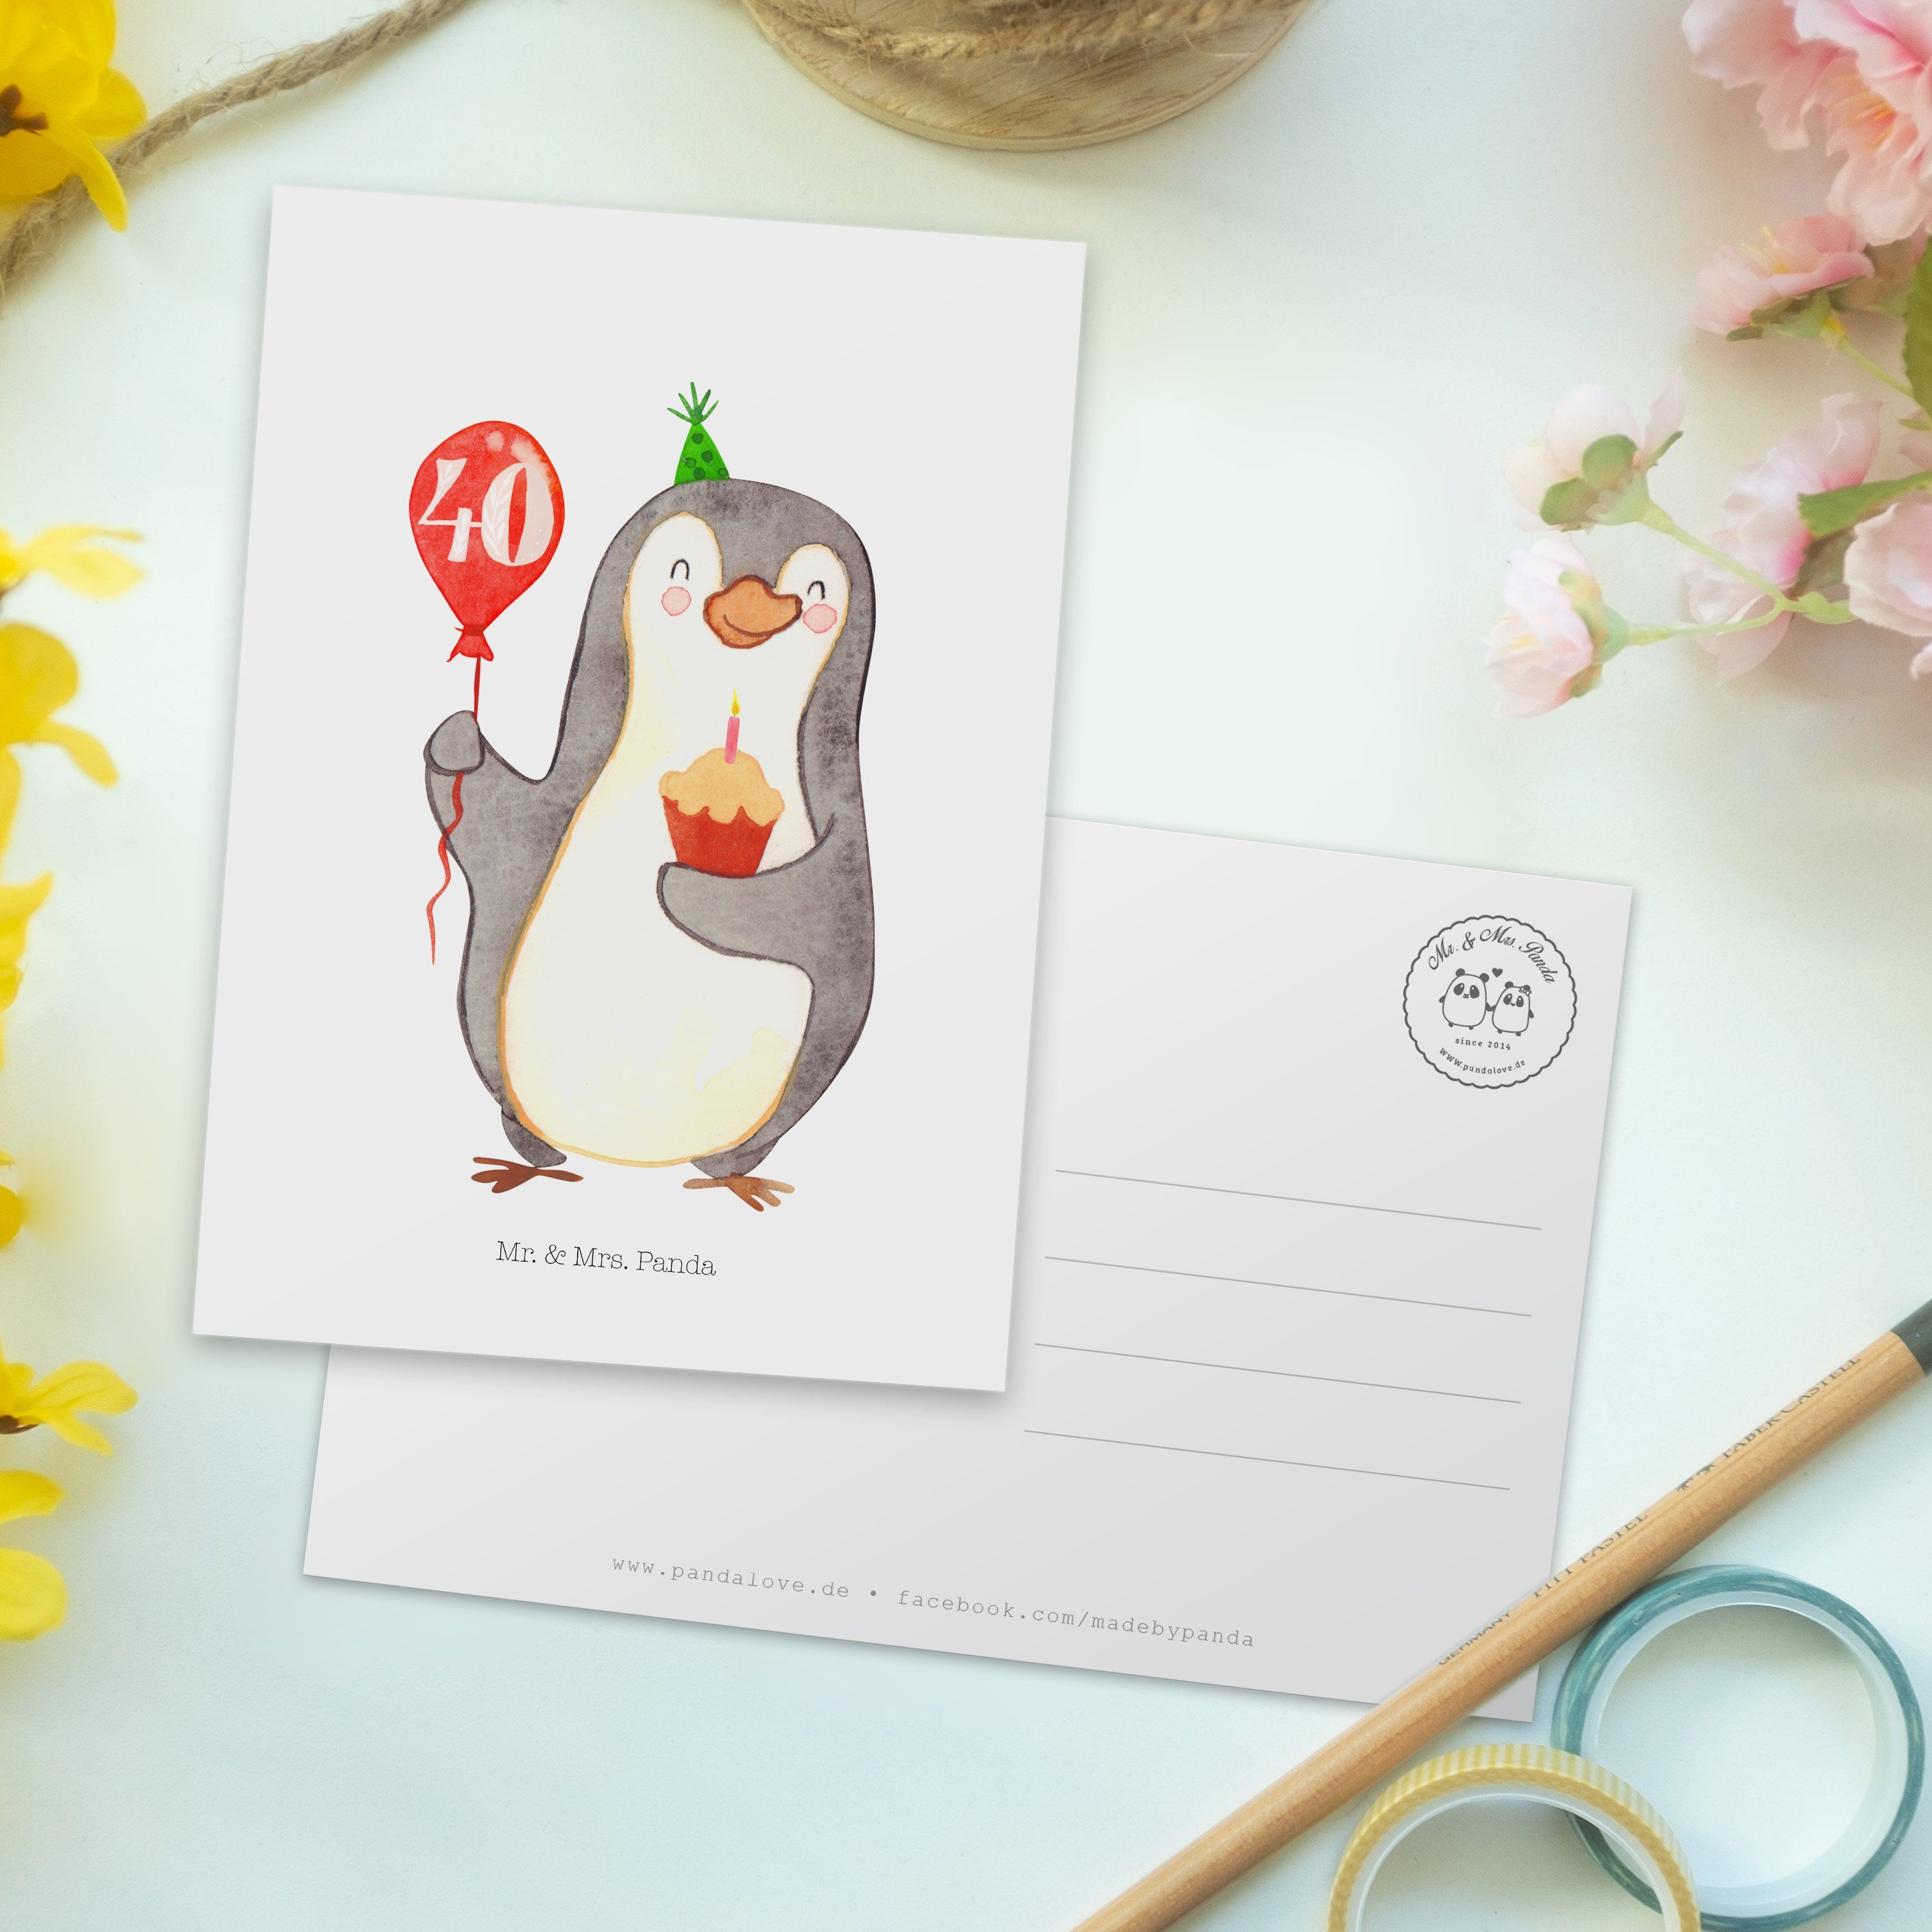 Mr. & Mrs. Panda Postkarte 40. Weiß Geschenkkarte, - G - Geburtstag Geschenk, Pinguin Luftballon